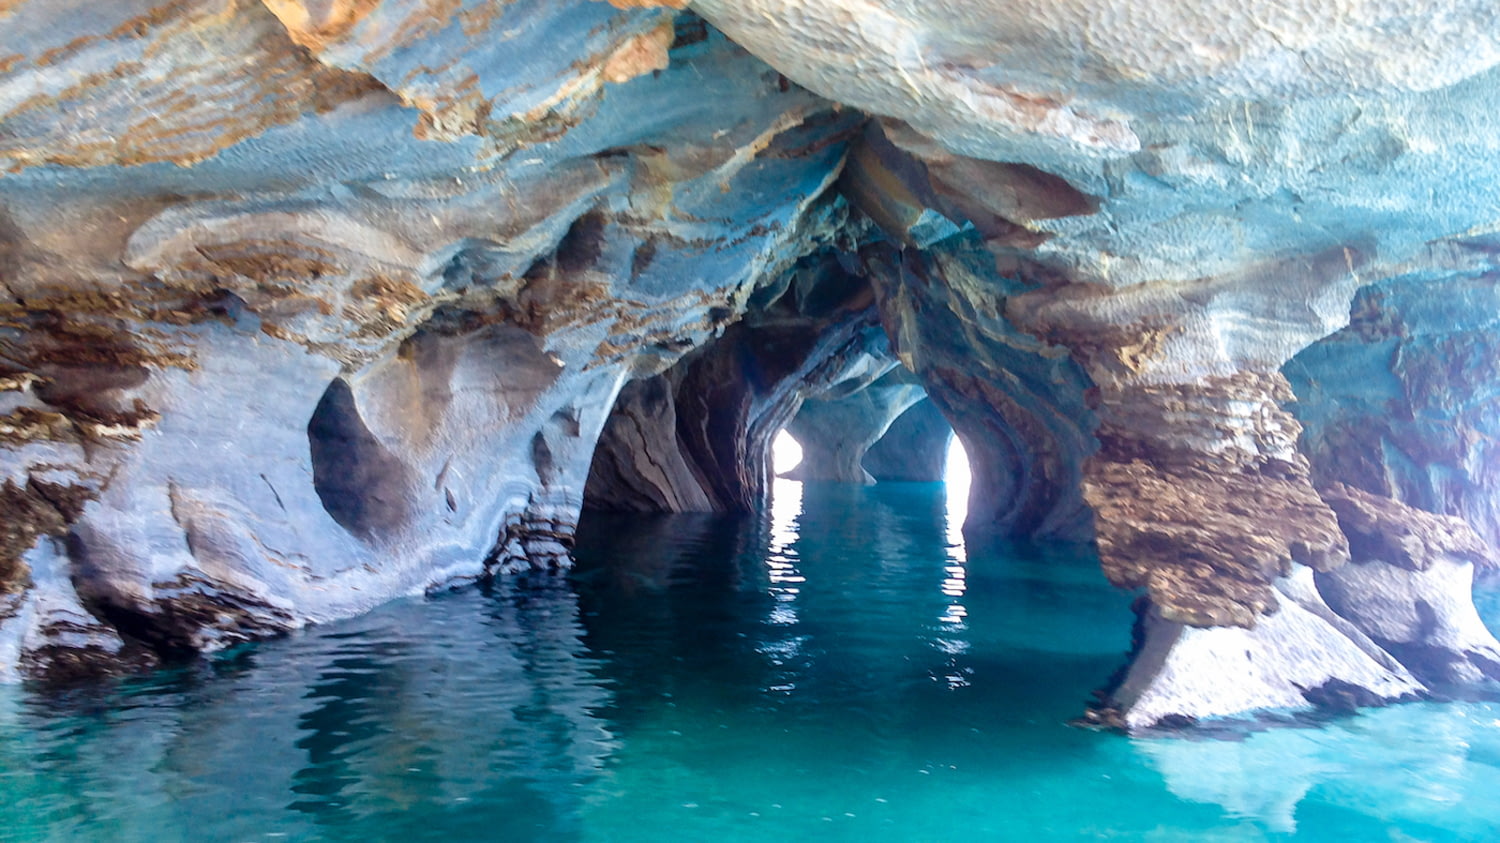 Höhlen aus farbigem Marmor über einem türkis schimmernden See